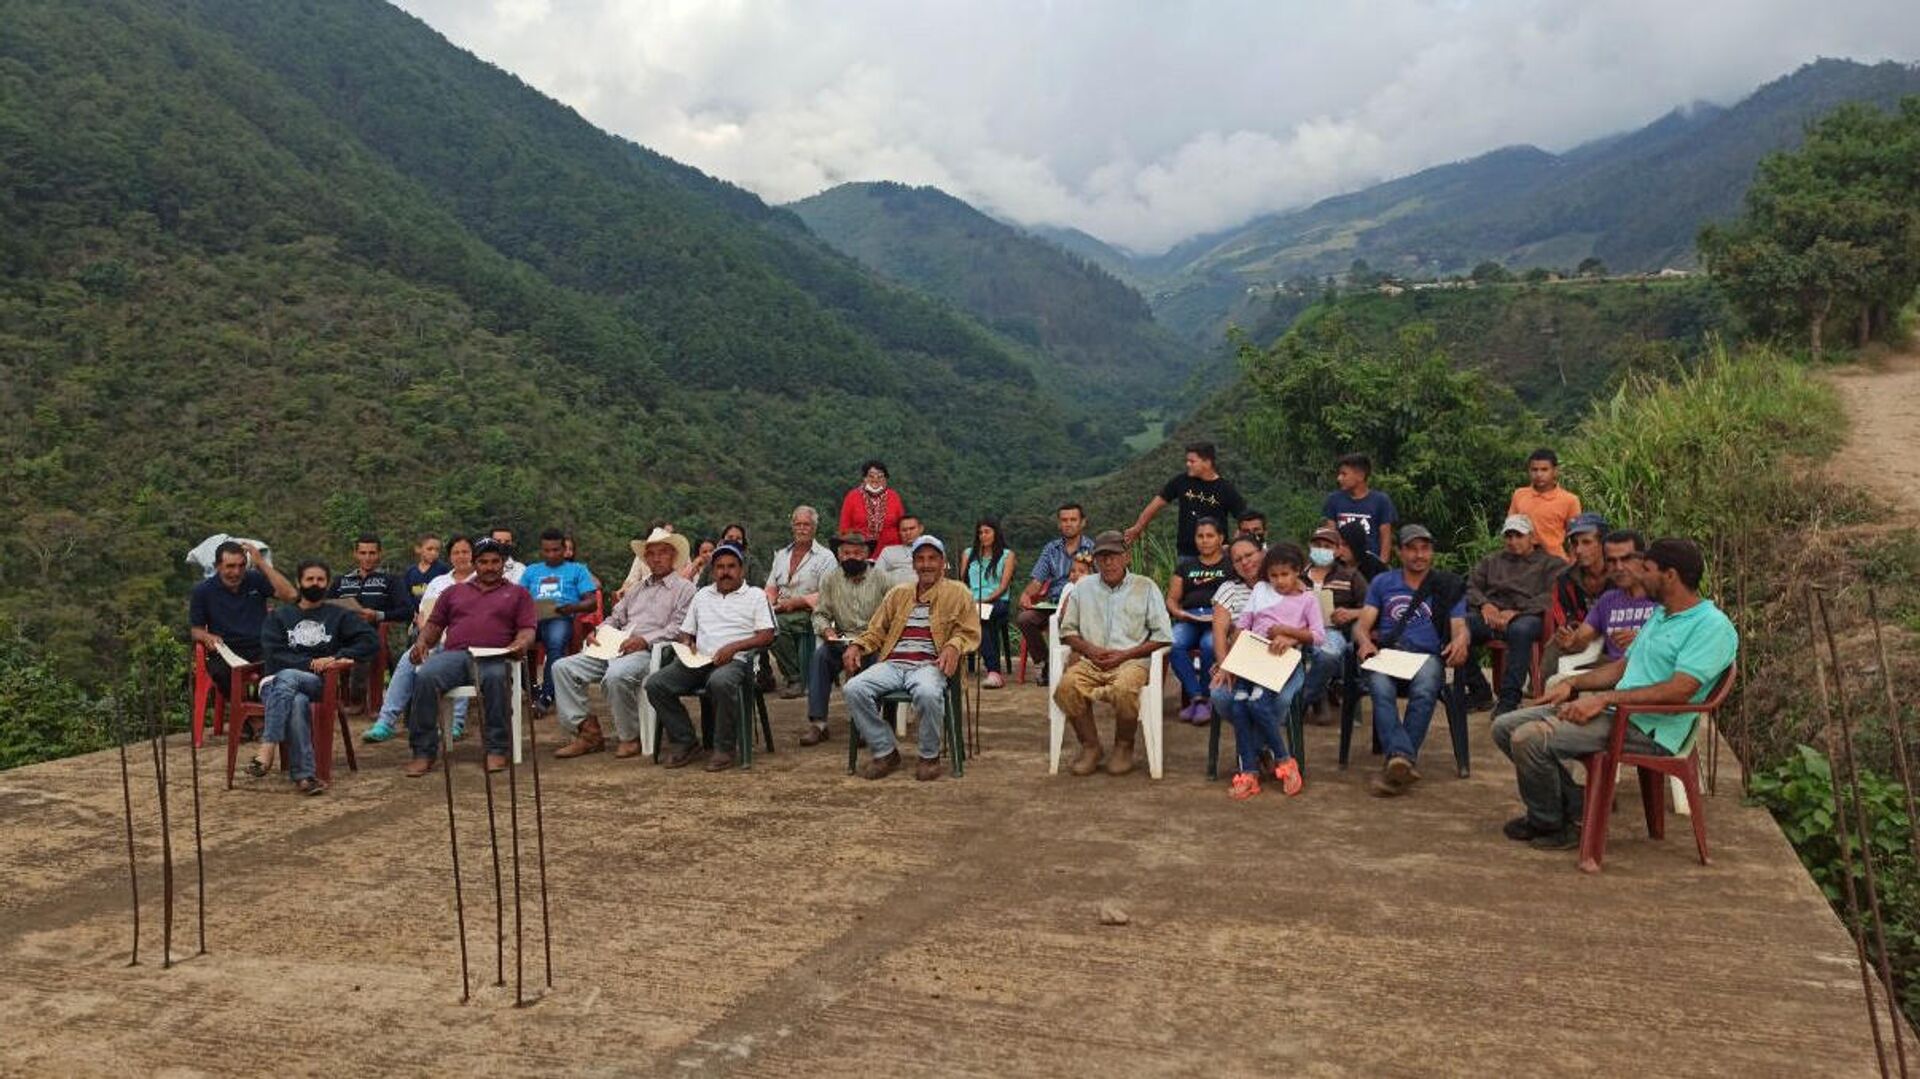 Campesinos de los Andes venezolanos inician asambleas para planificar la producción agrícola - Sputnik Mundo, 1920, 11.08.2021